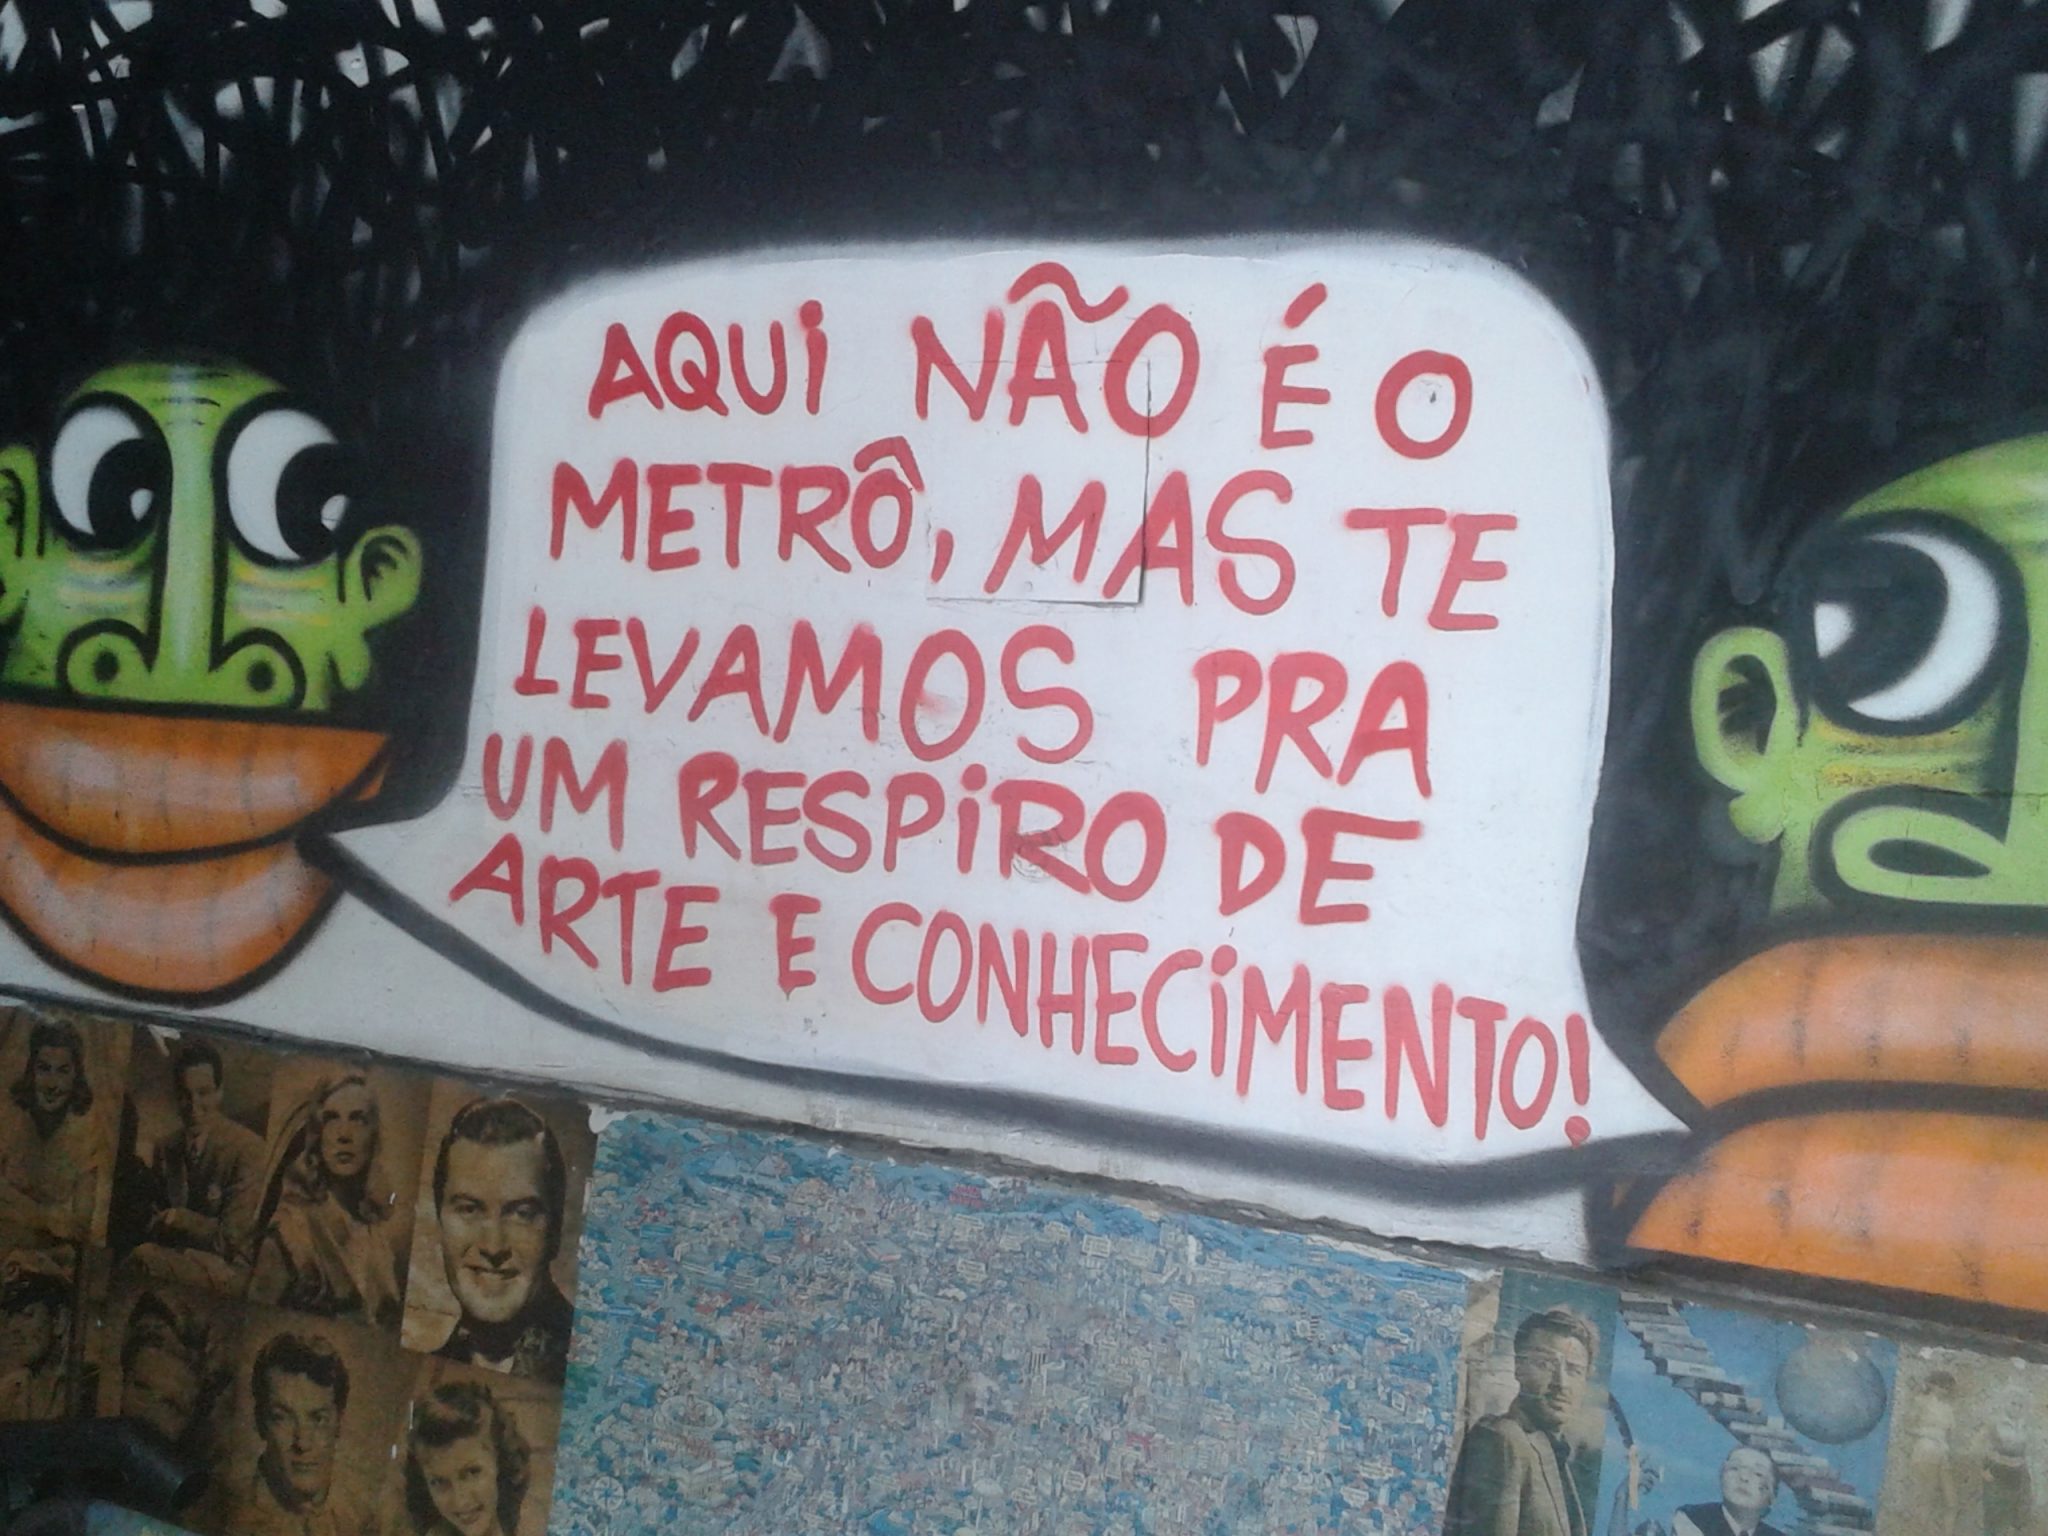 20151204 145757 1 - Arte debaixo de São Paulo - Conheça a Passagem Literária da Consolação